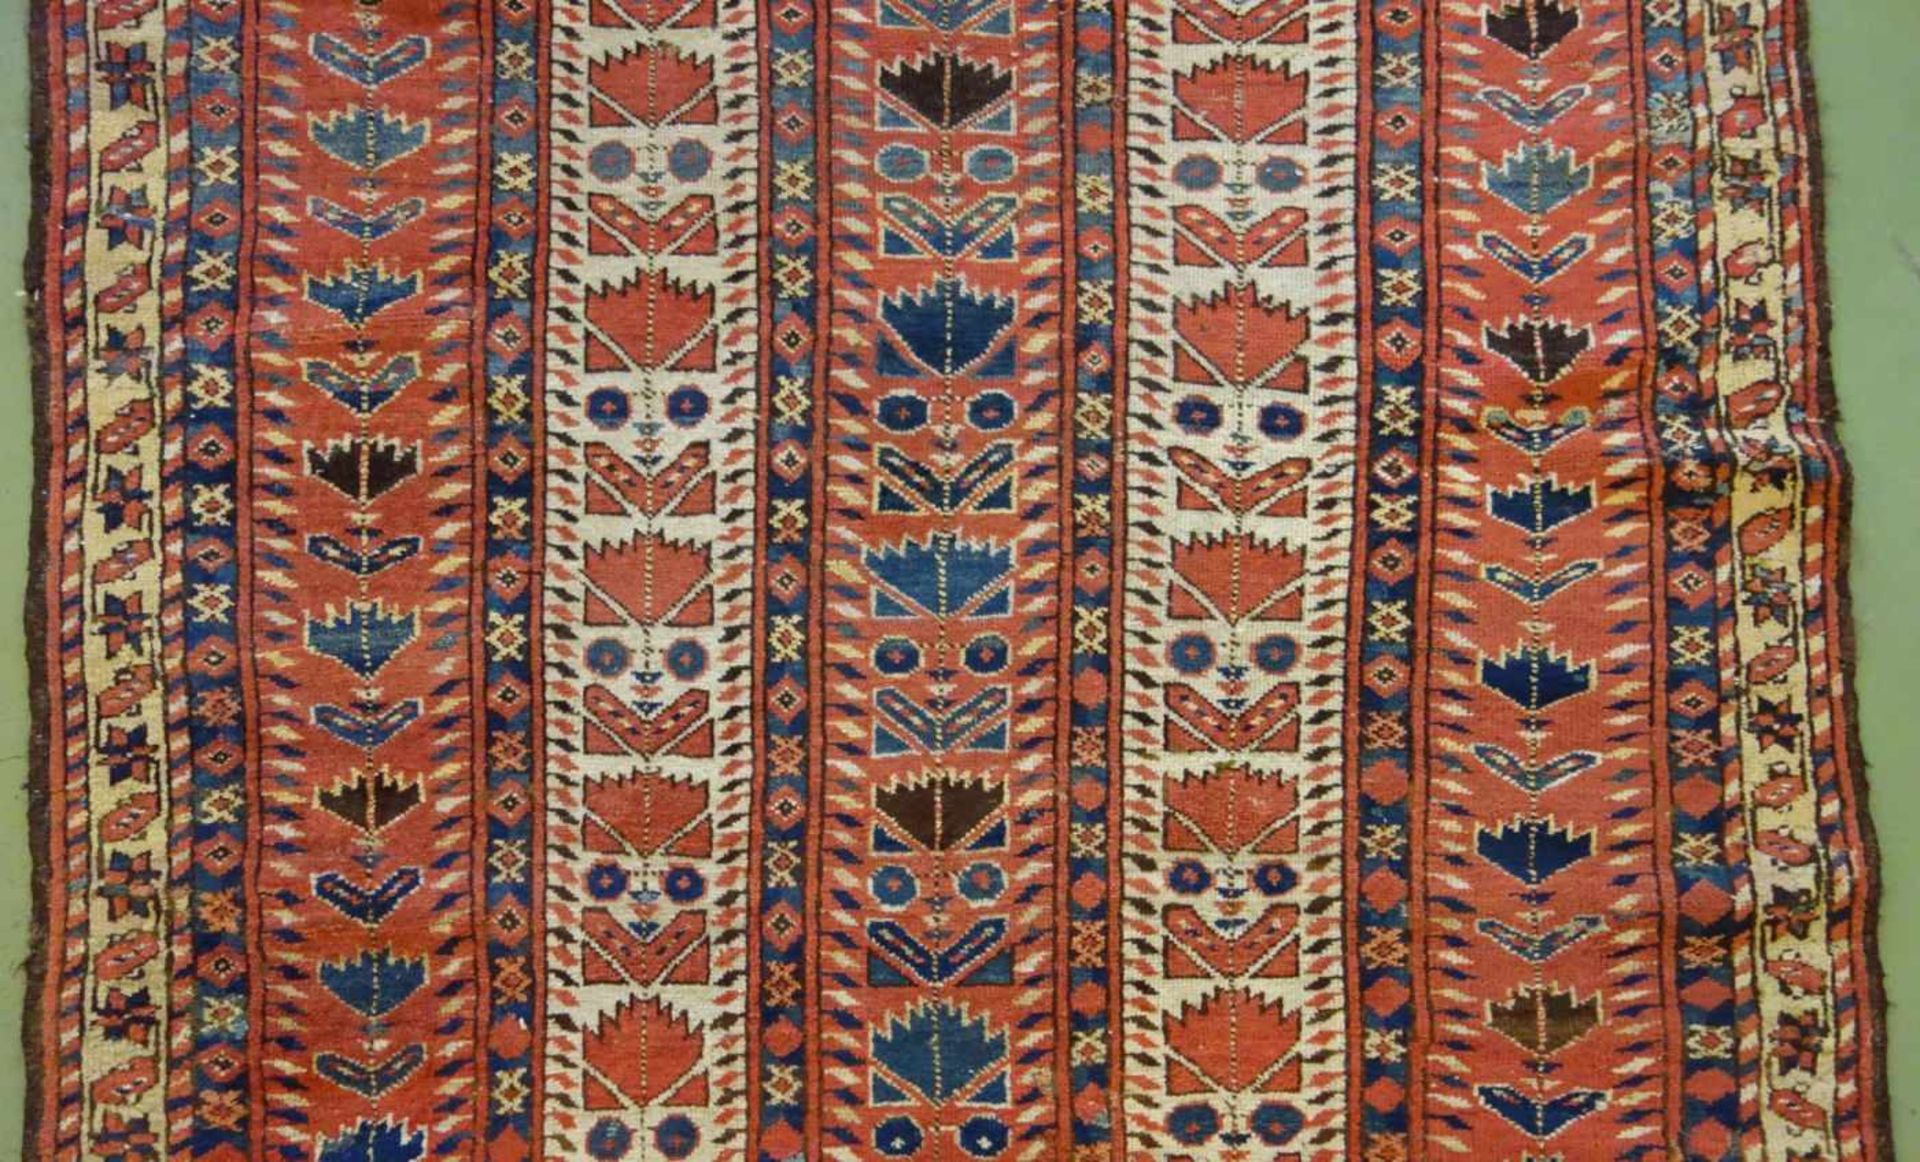 SCHMALER BESCHIR GEBETSTEPPICH / prayer rug, wohl 2. H. 19. Jh., Turkmenistan / Ersari-Beschir ( - Image 22 of 24